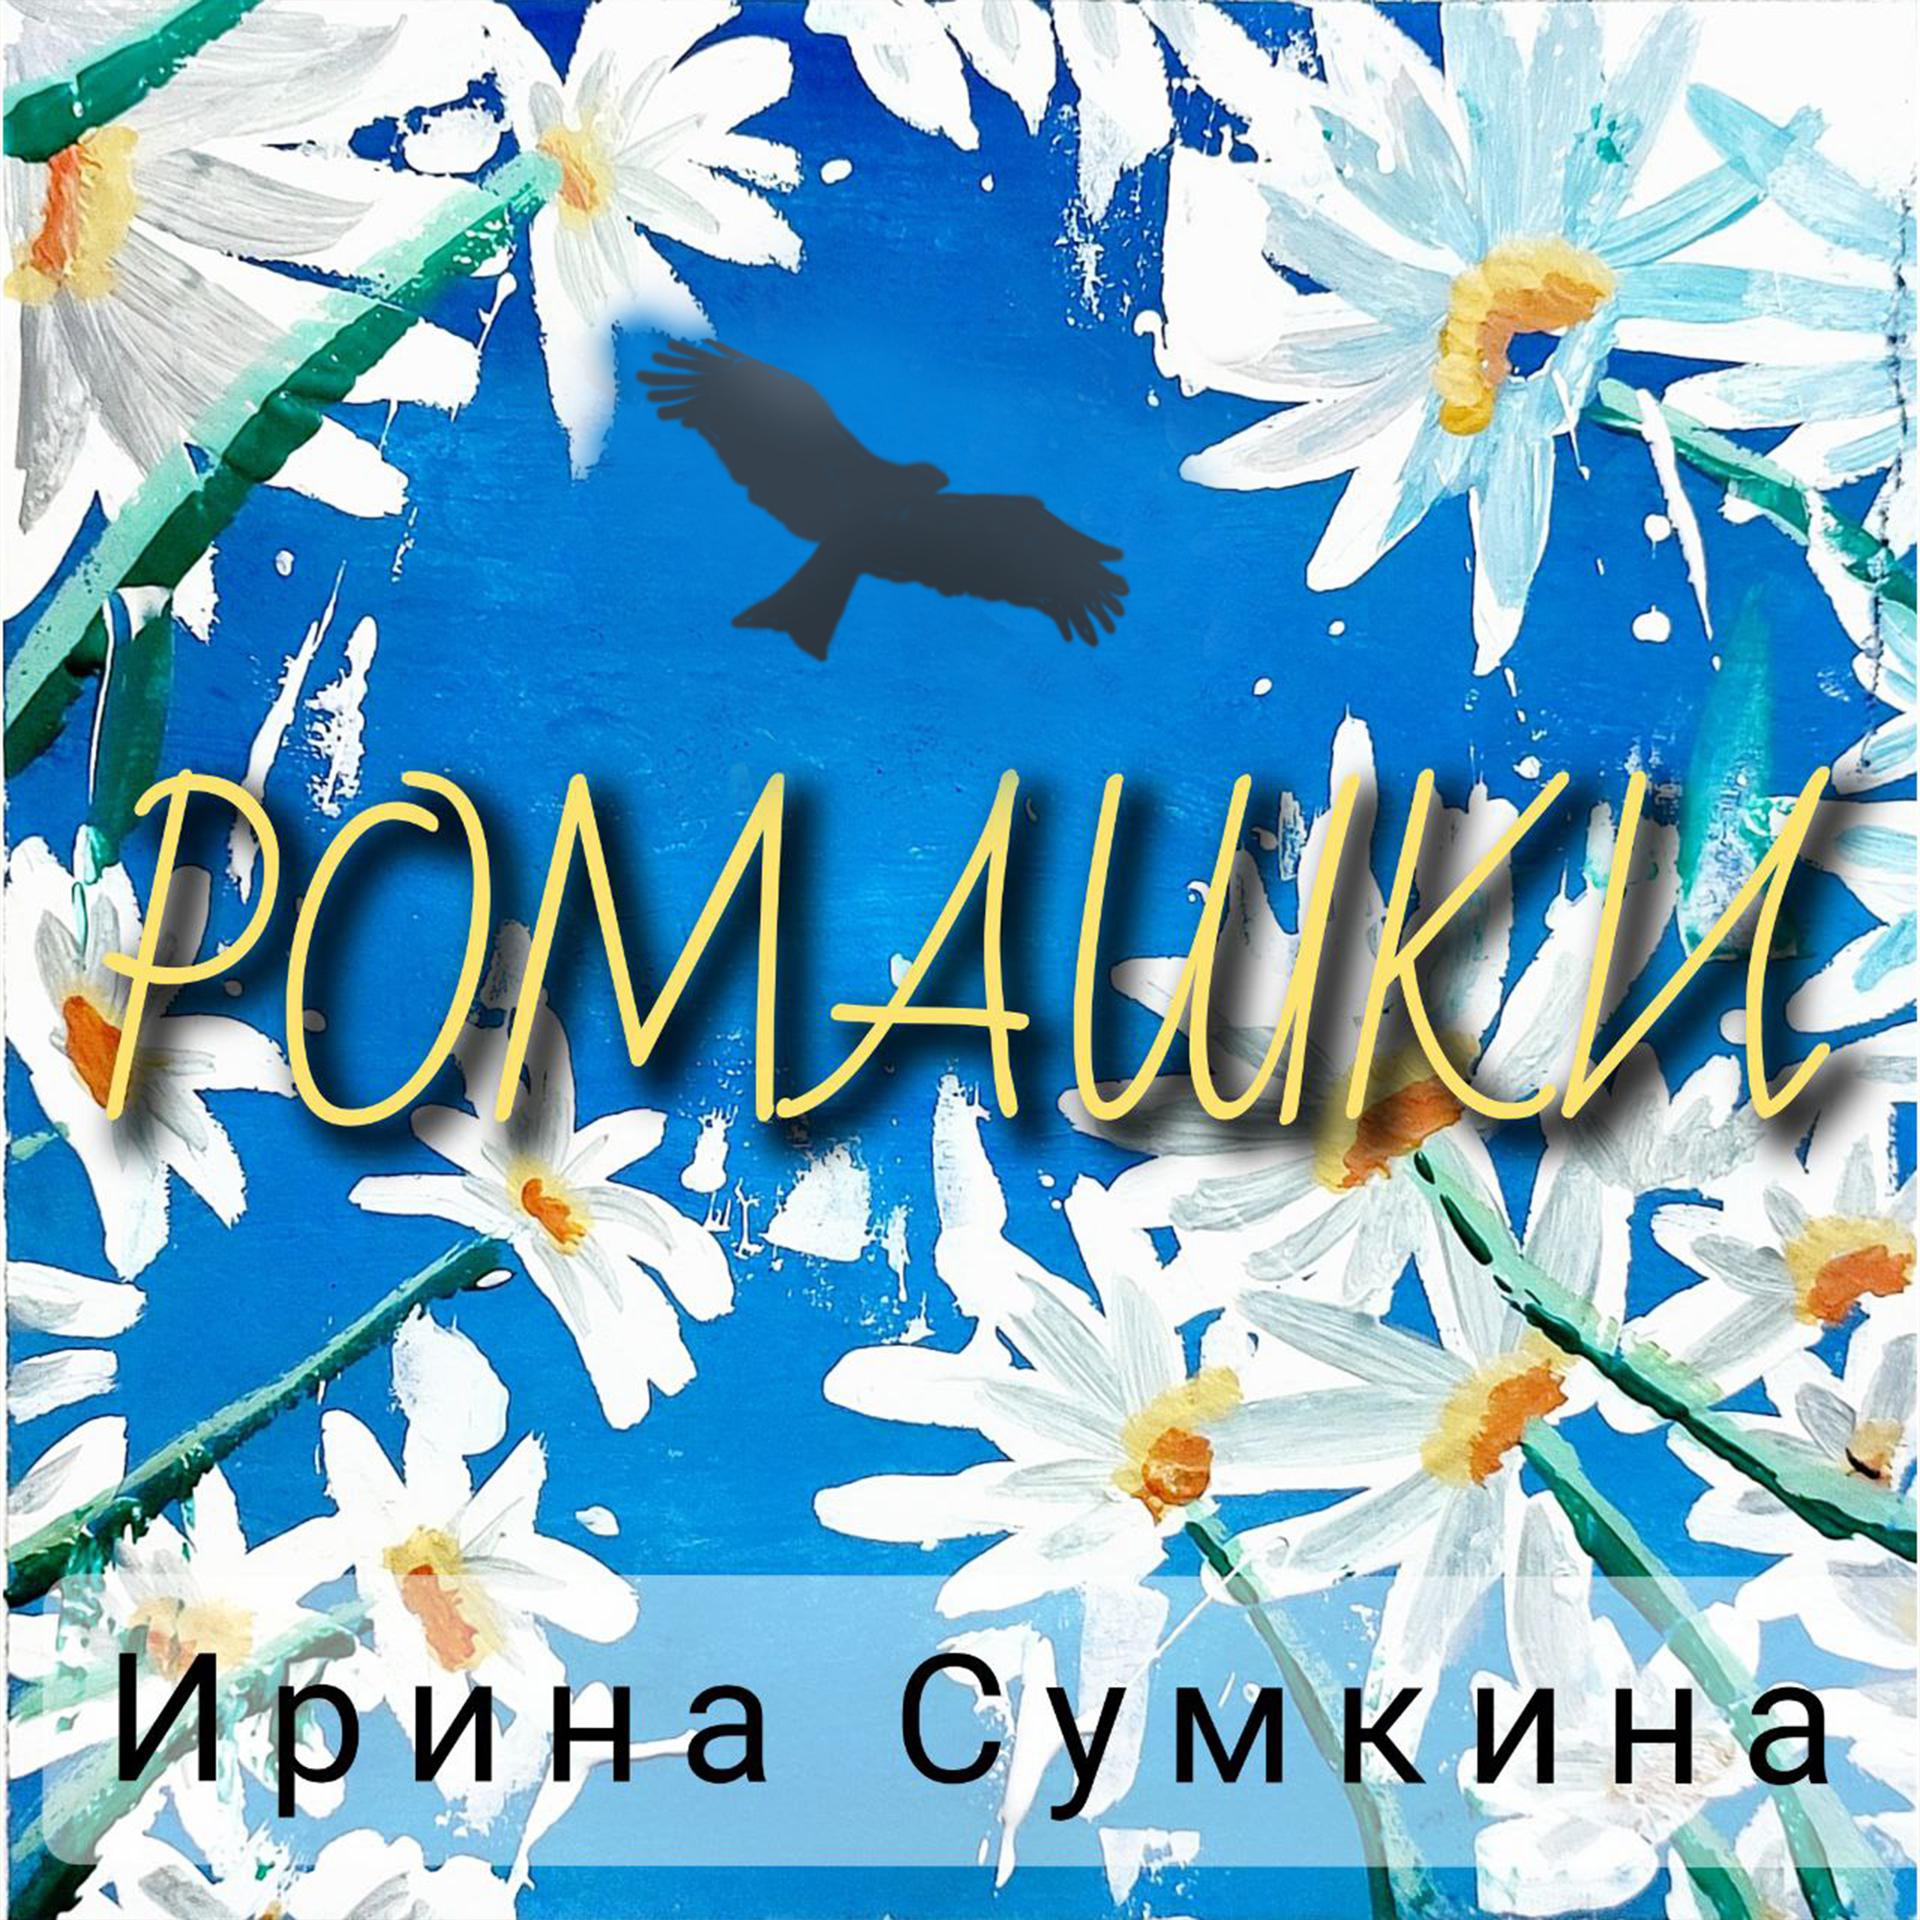 Постер альбома Ромашки